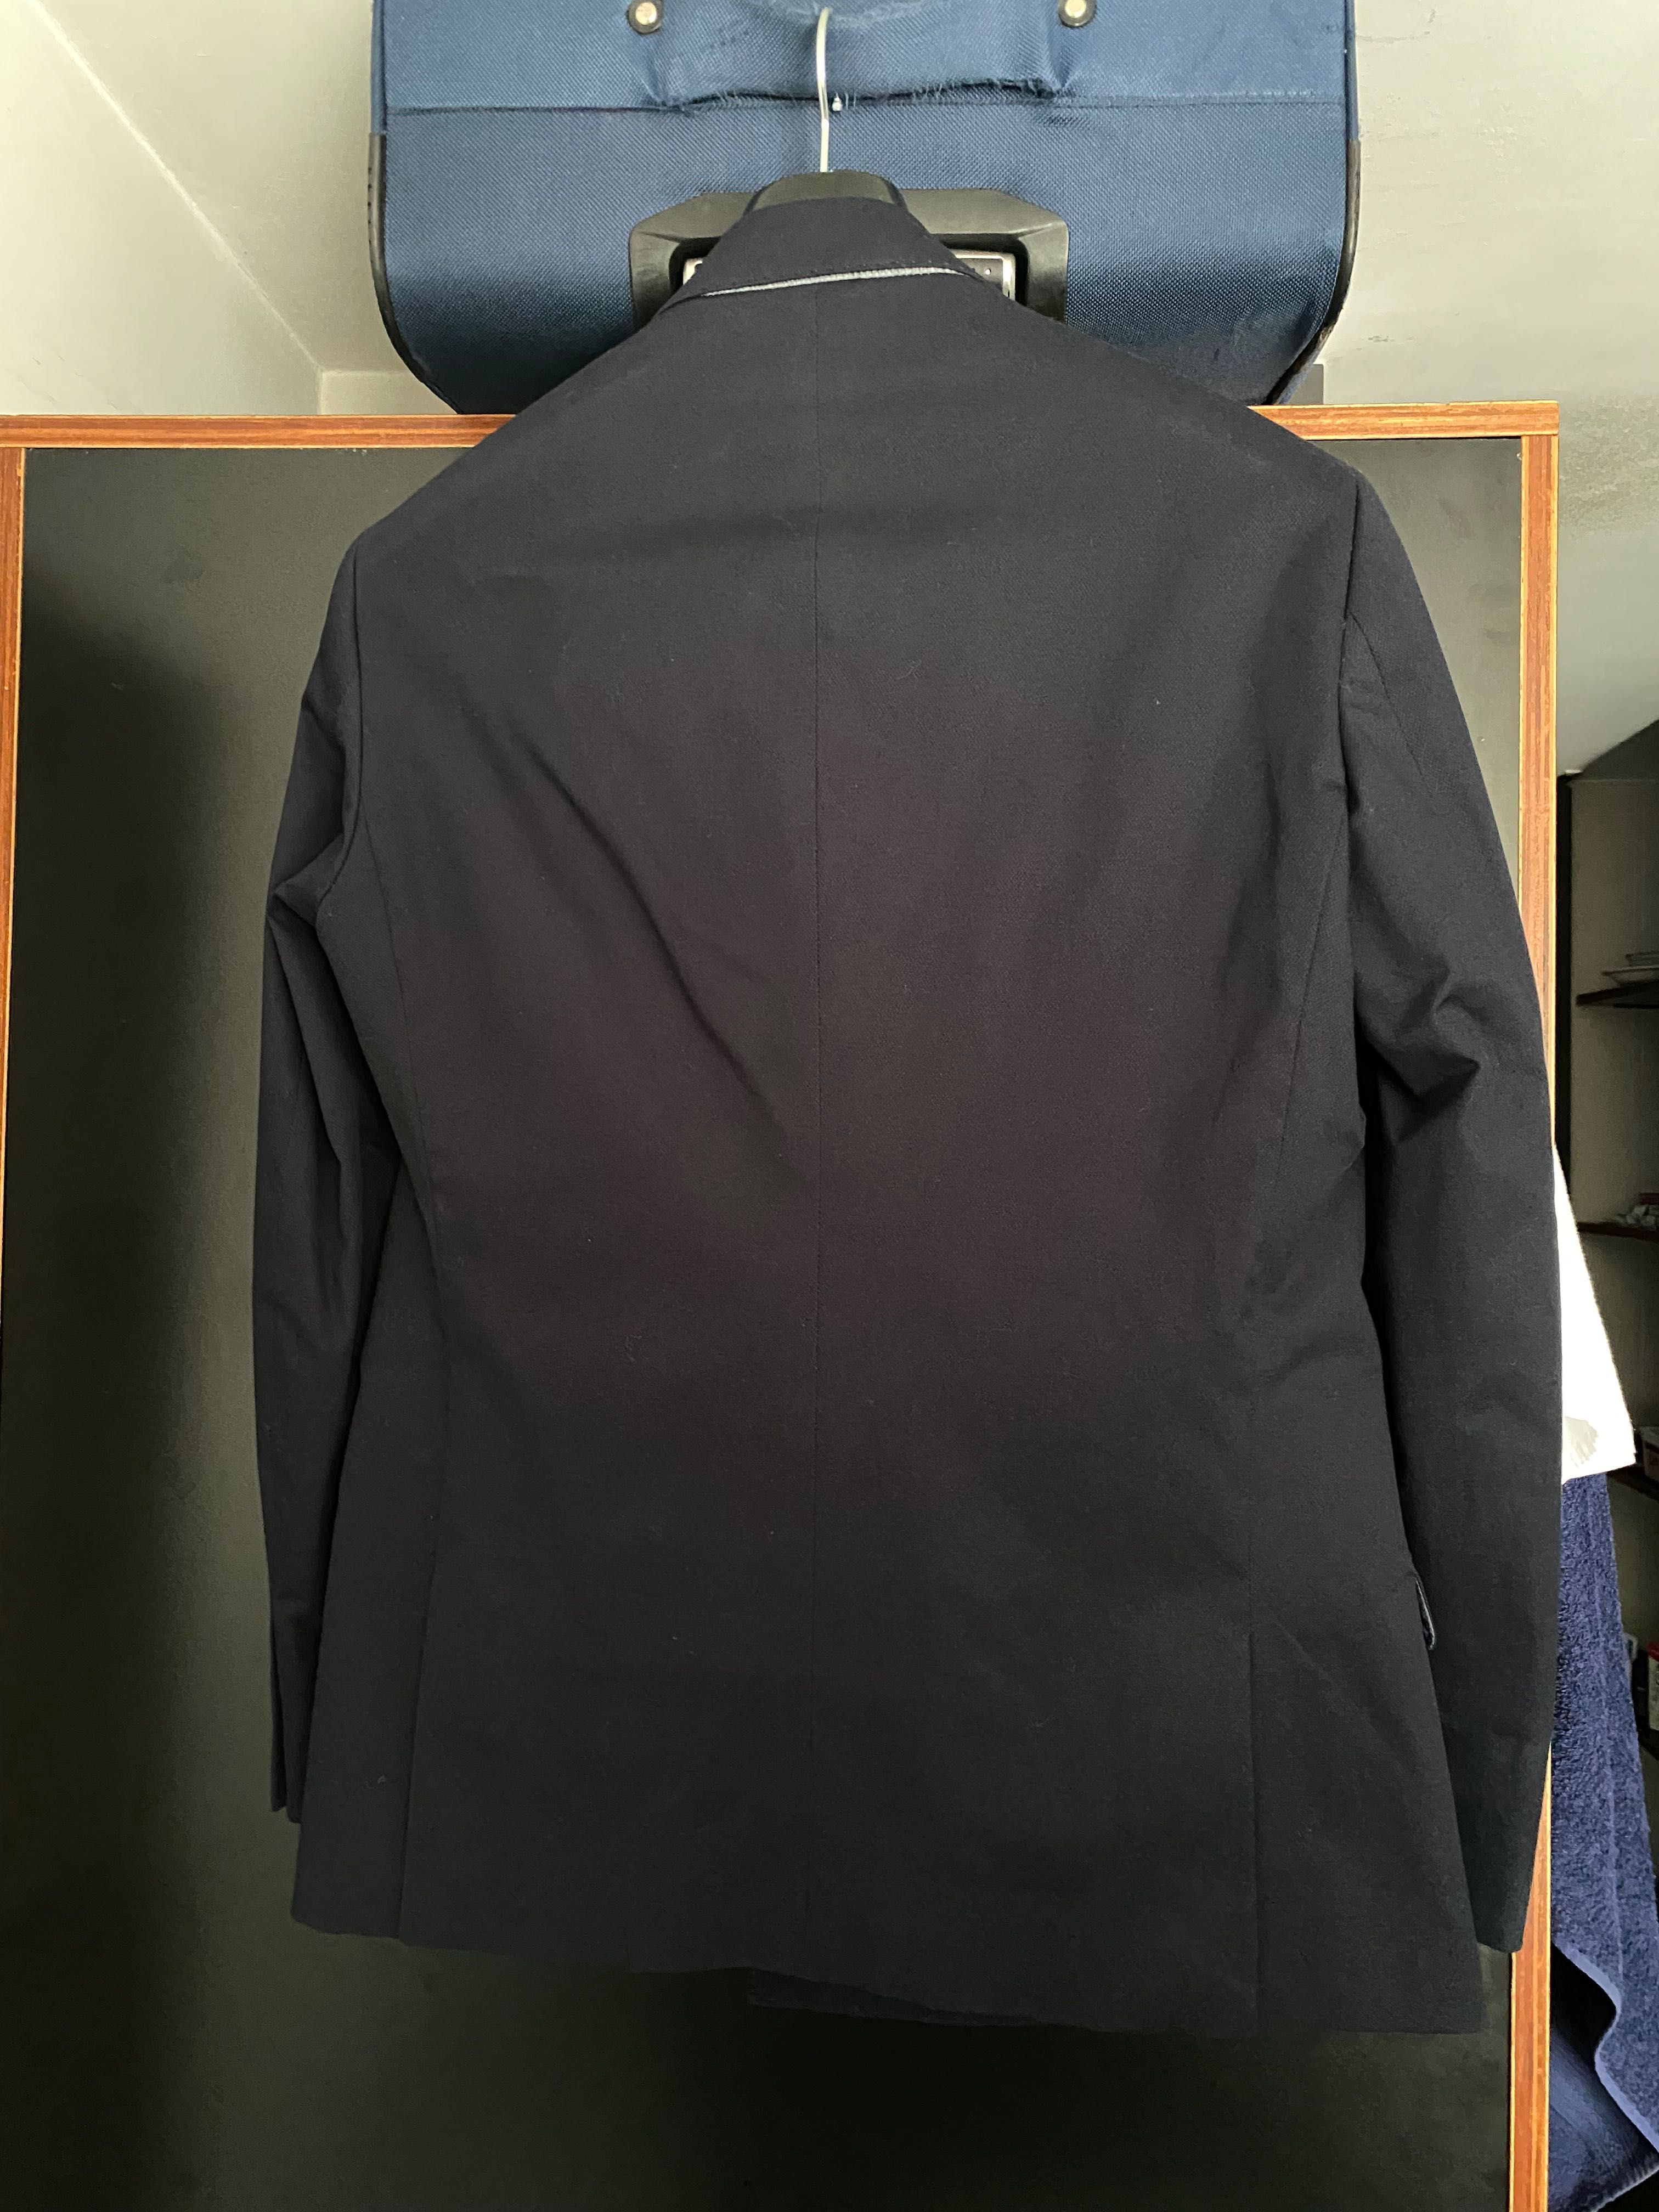 Fato completo Suits Inc azul marinho tamanho 40/48 NOVO